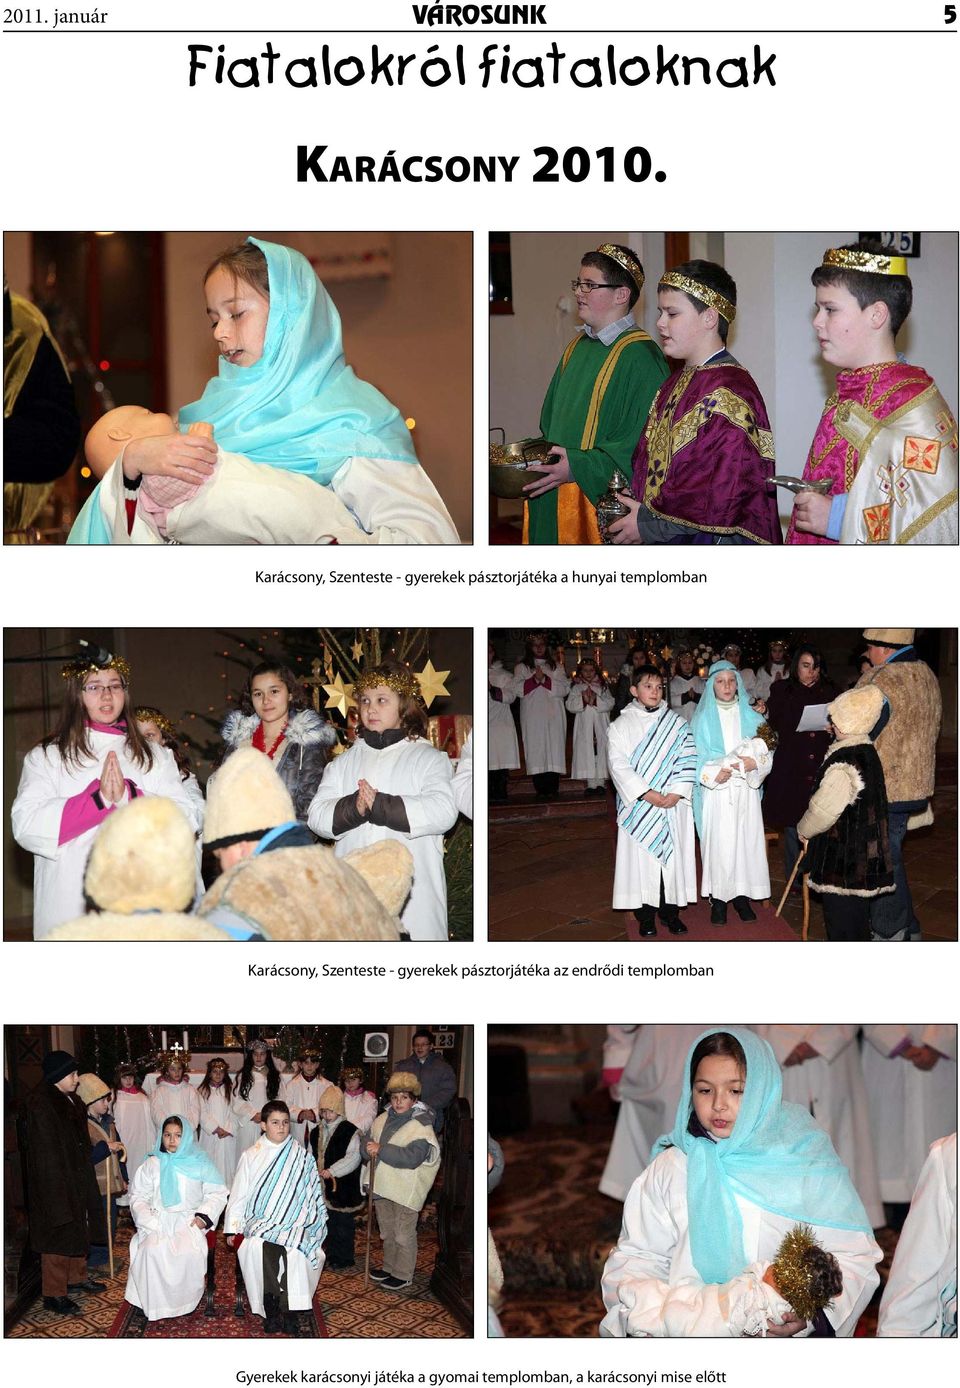 Karácsony, Szenteste - gyerekek pásztorjátéka az endrődi templomban